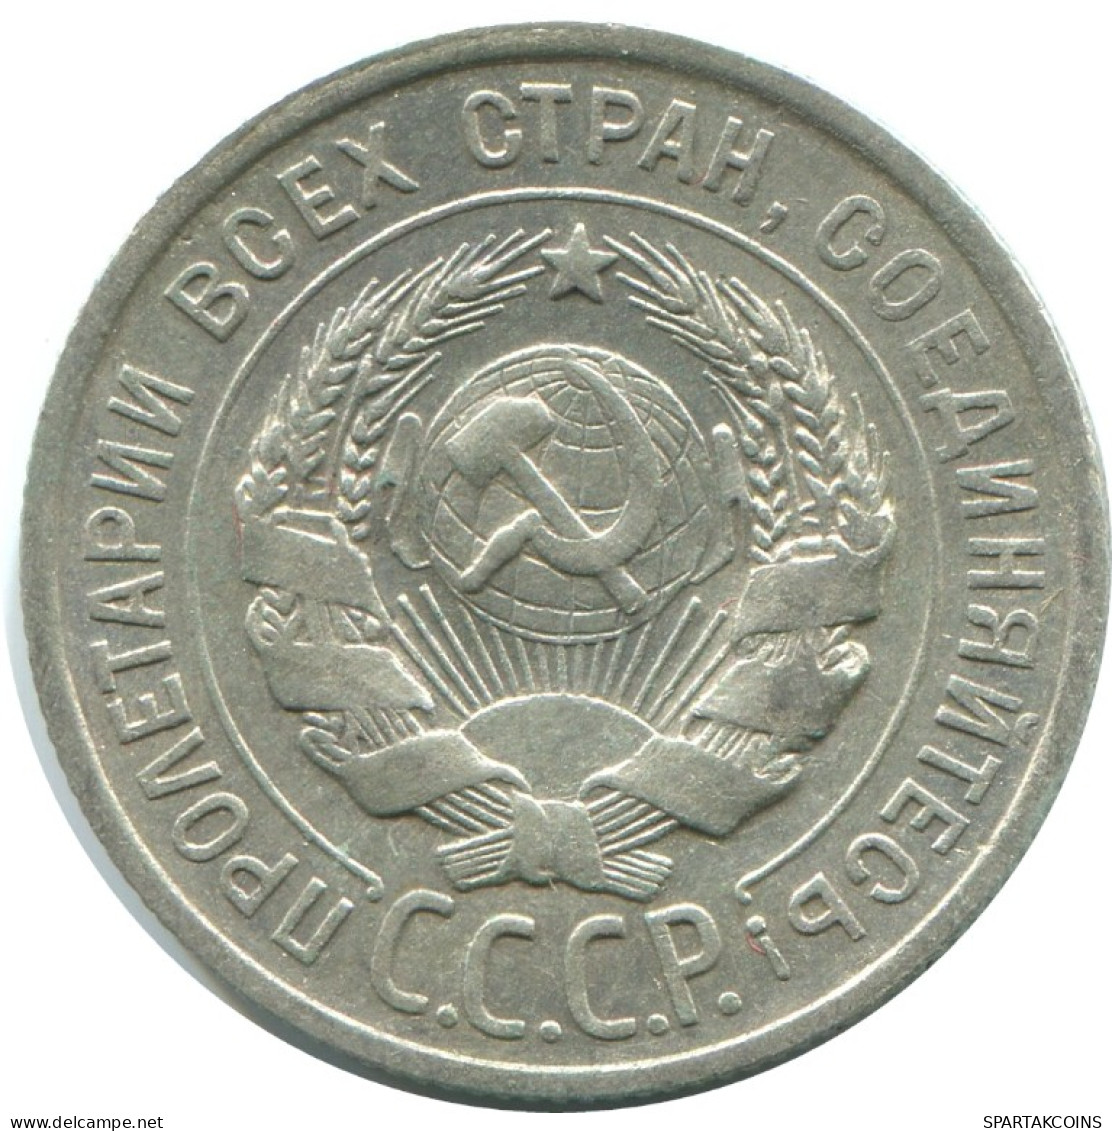 20 KOPEKS 1924 RUSSLAND RUSSIA USSR SILBER Münze HIGH GRADE #AF300.4.D.A - Russia